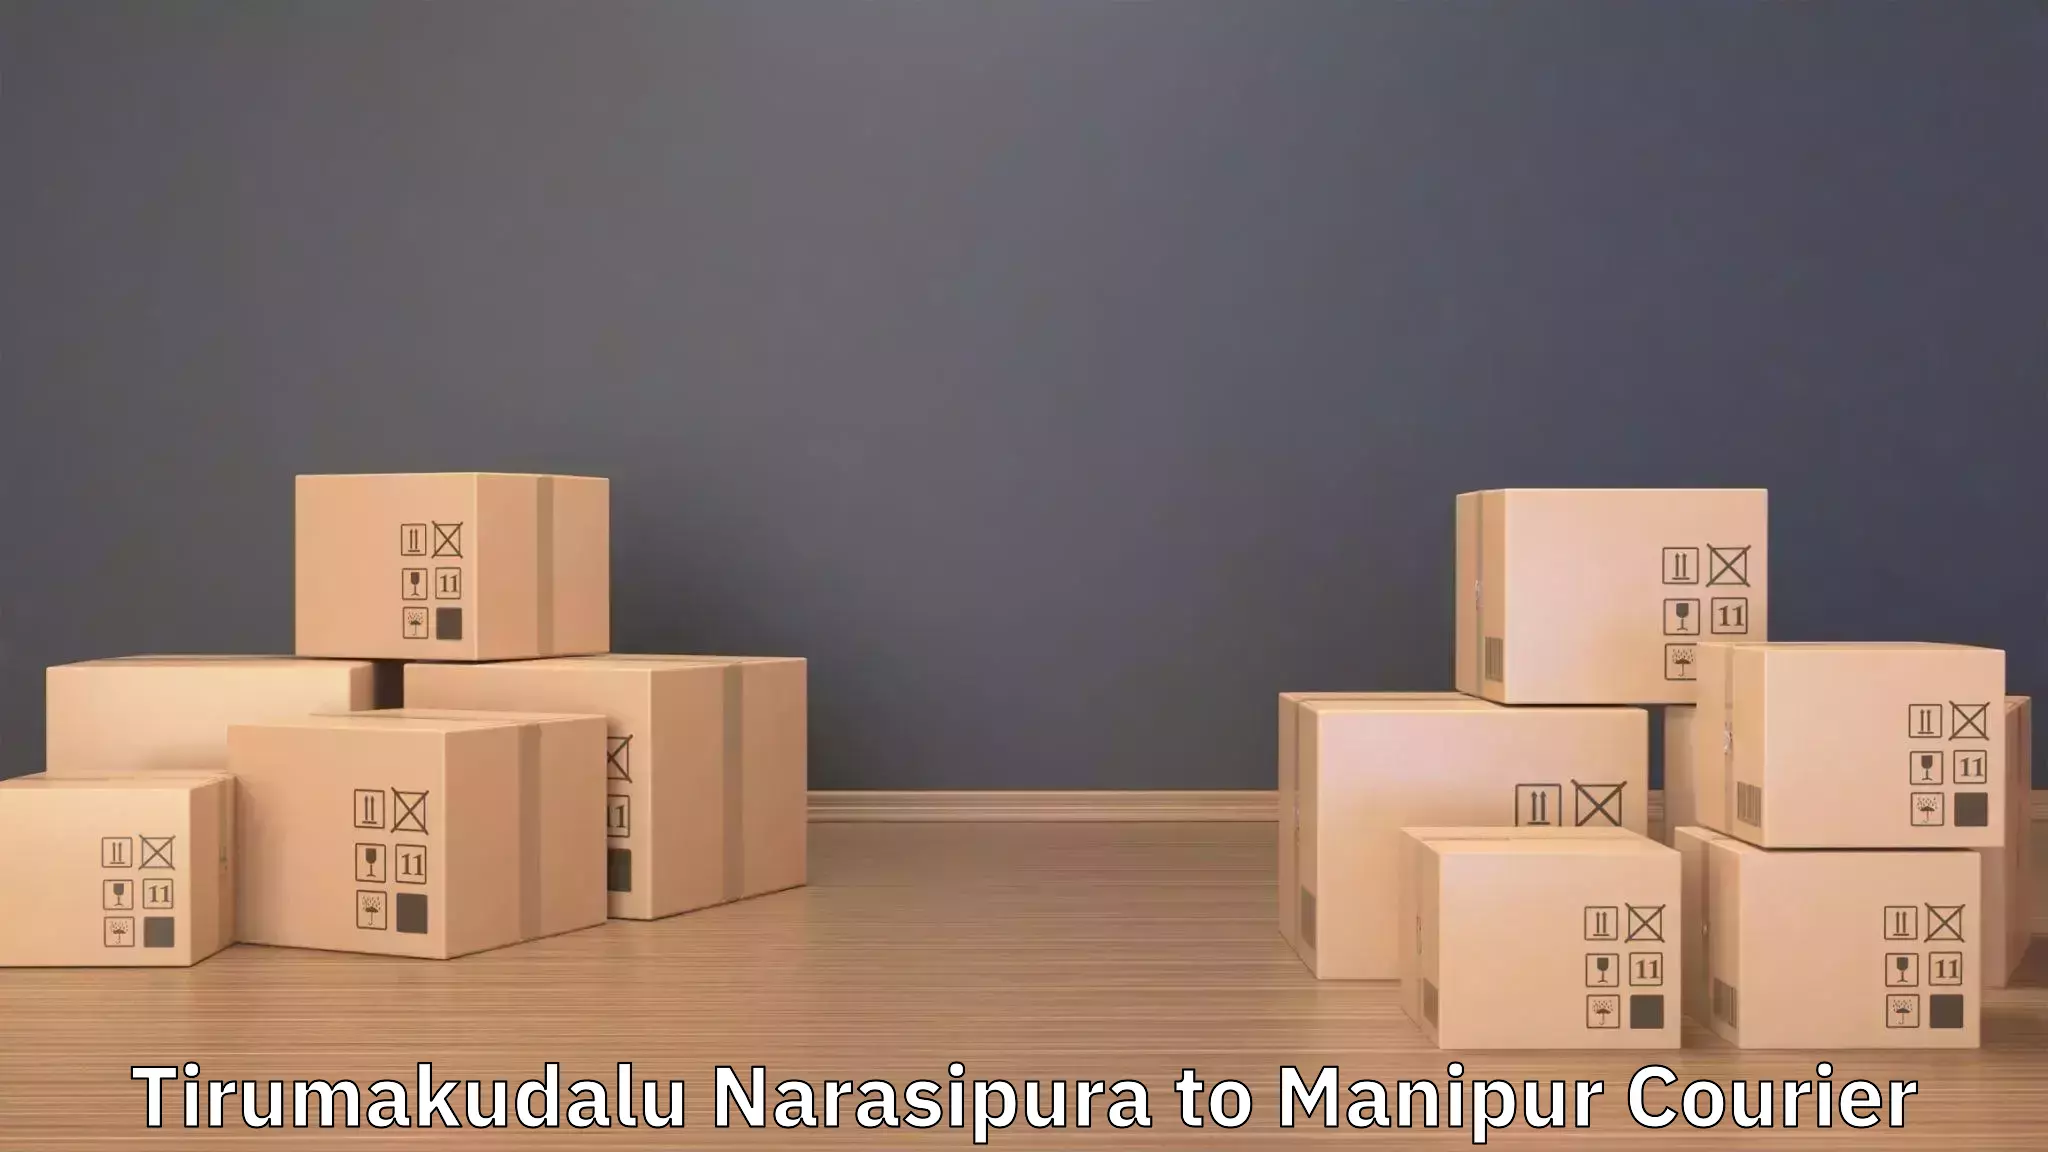 Customized household moving in Tirumakudalu Narasipura to NIT Manipur